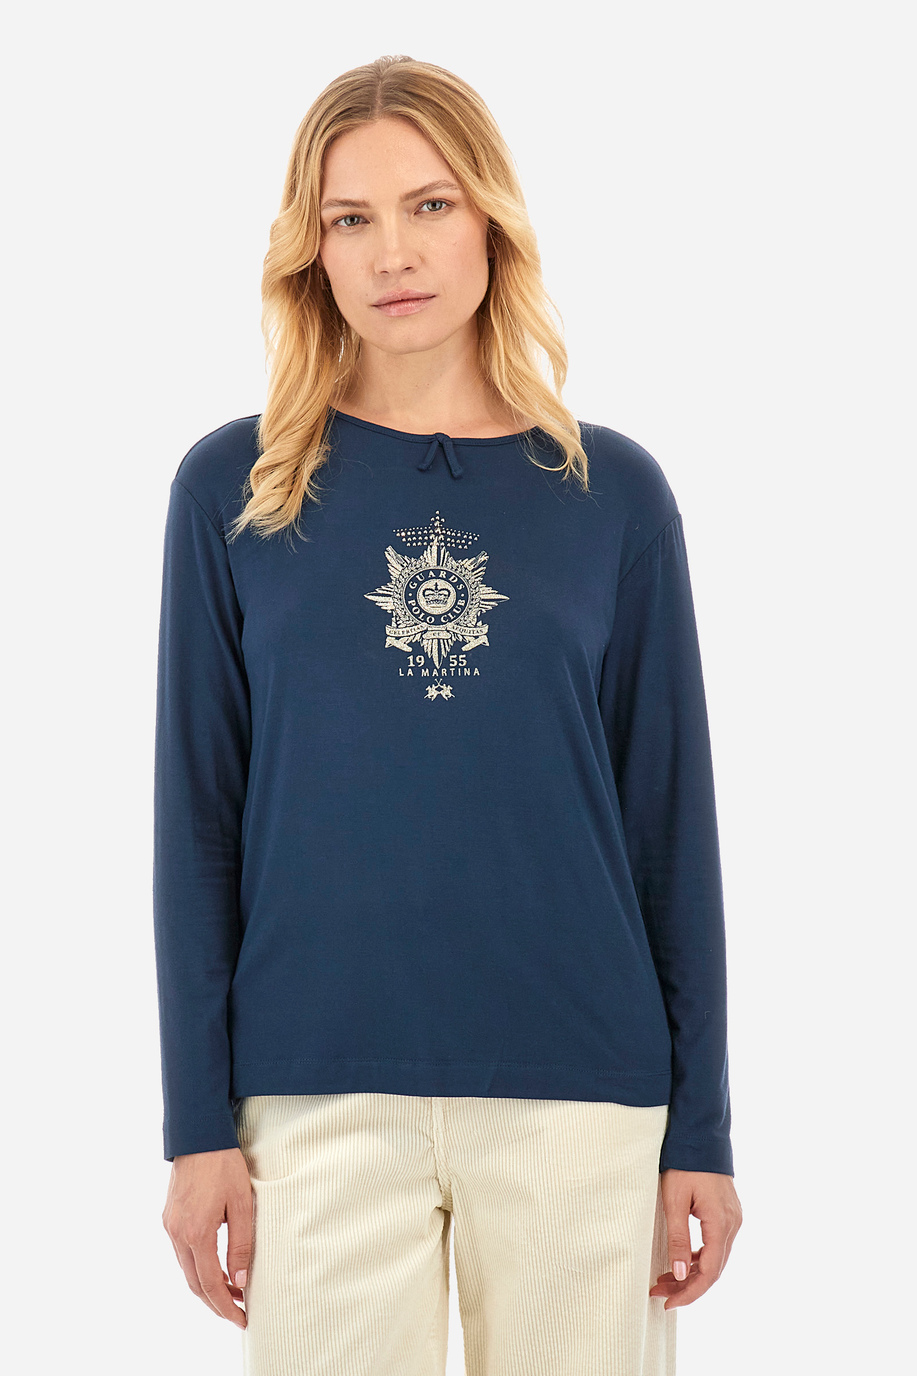 Tee-shirt femme coupe classique - Wyetta - -20% | step 1 | US | La Martina - Official Online Shop